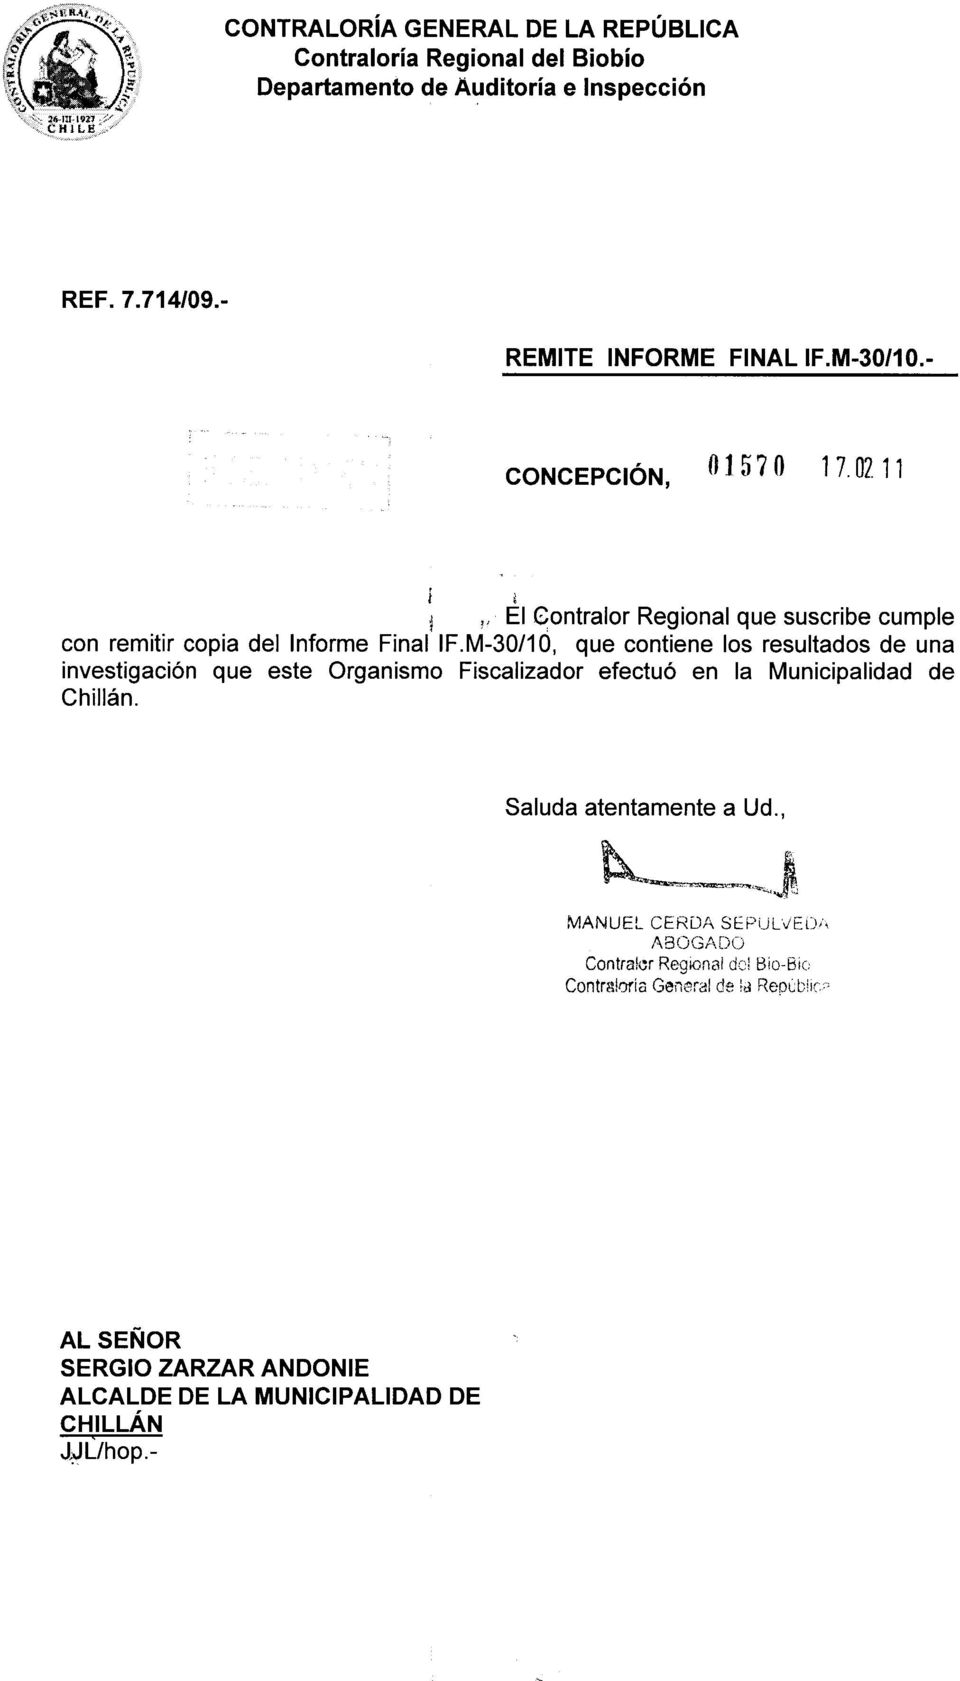 M-30/10, que contiene los resultados de una investigación que este Organismo Fiscalizador efectuó en la Municipalidad de Chillán.